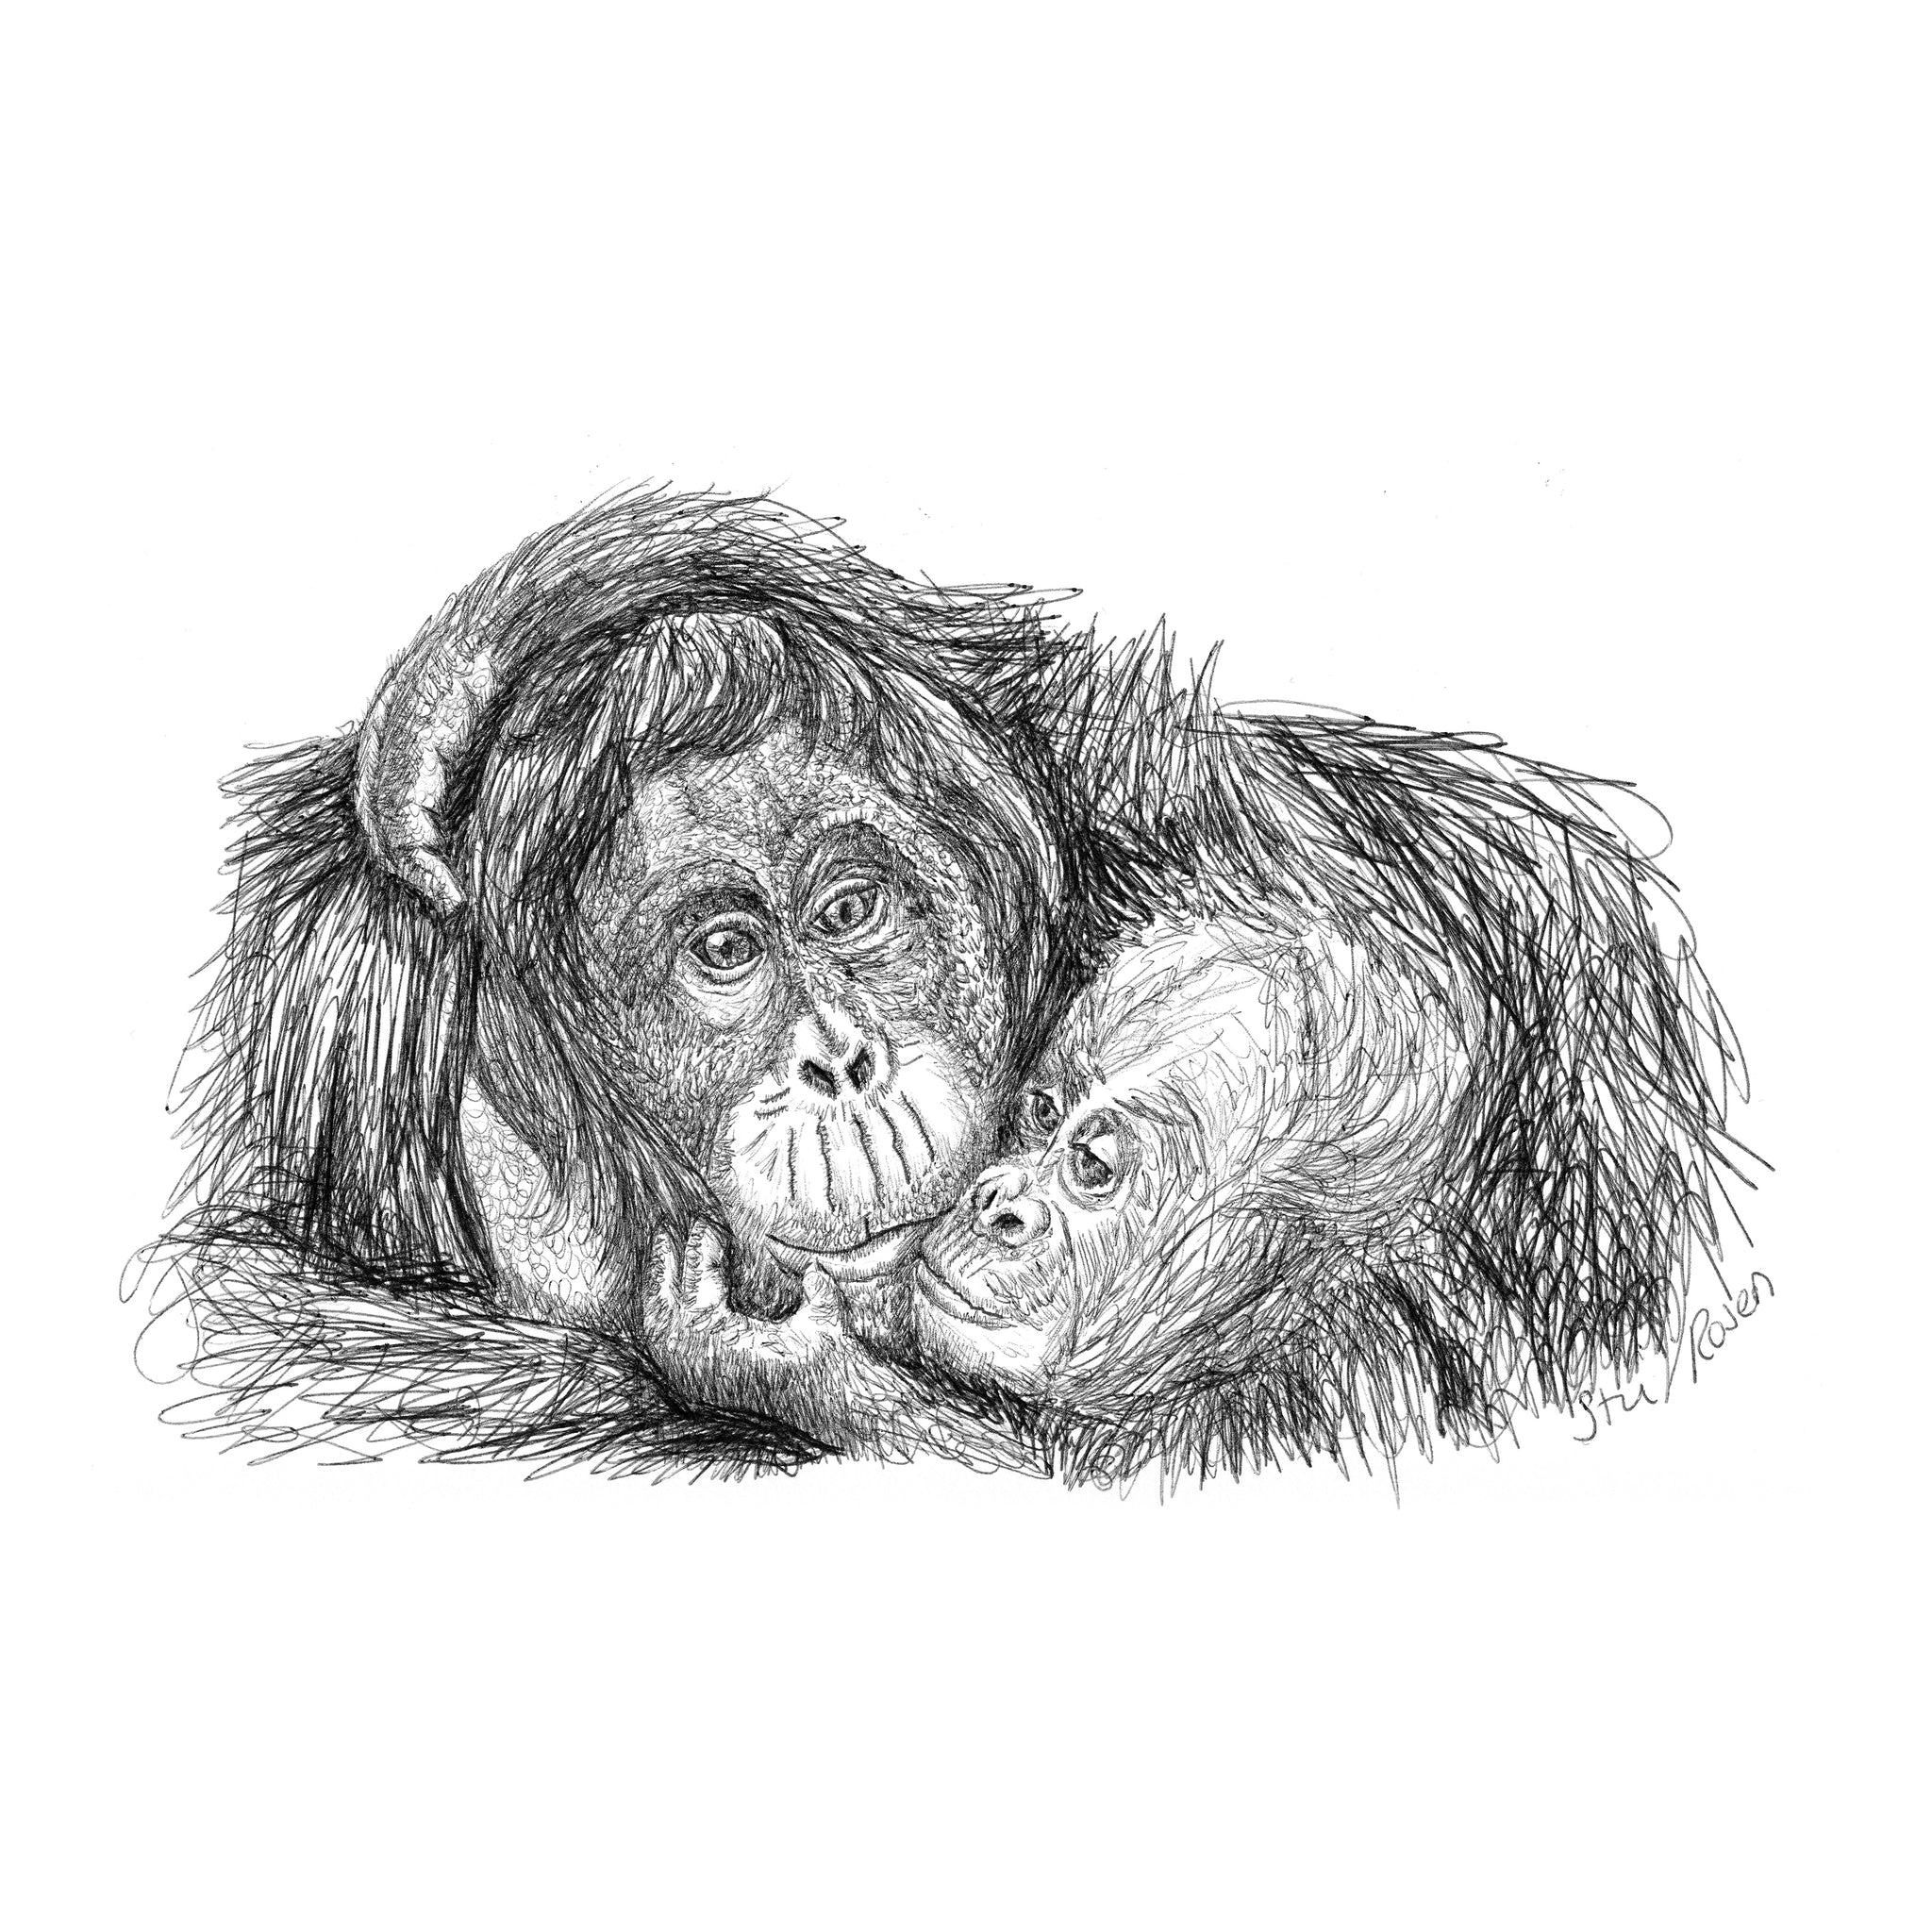 Orangutan - "Stolen Kiss"